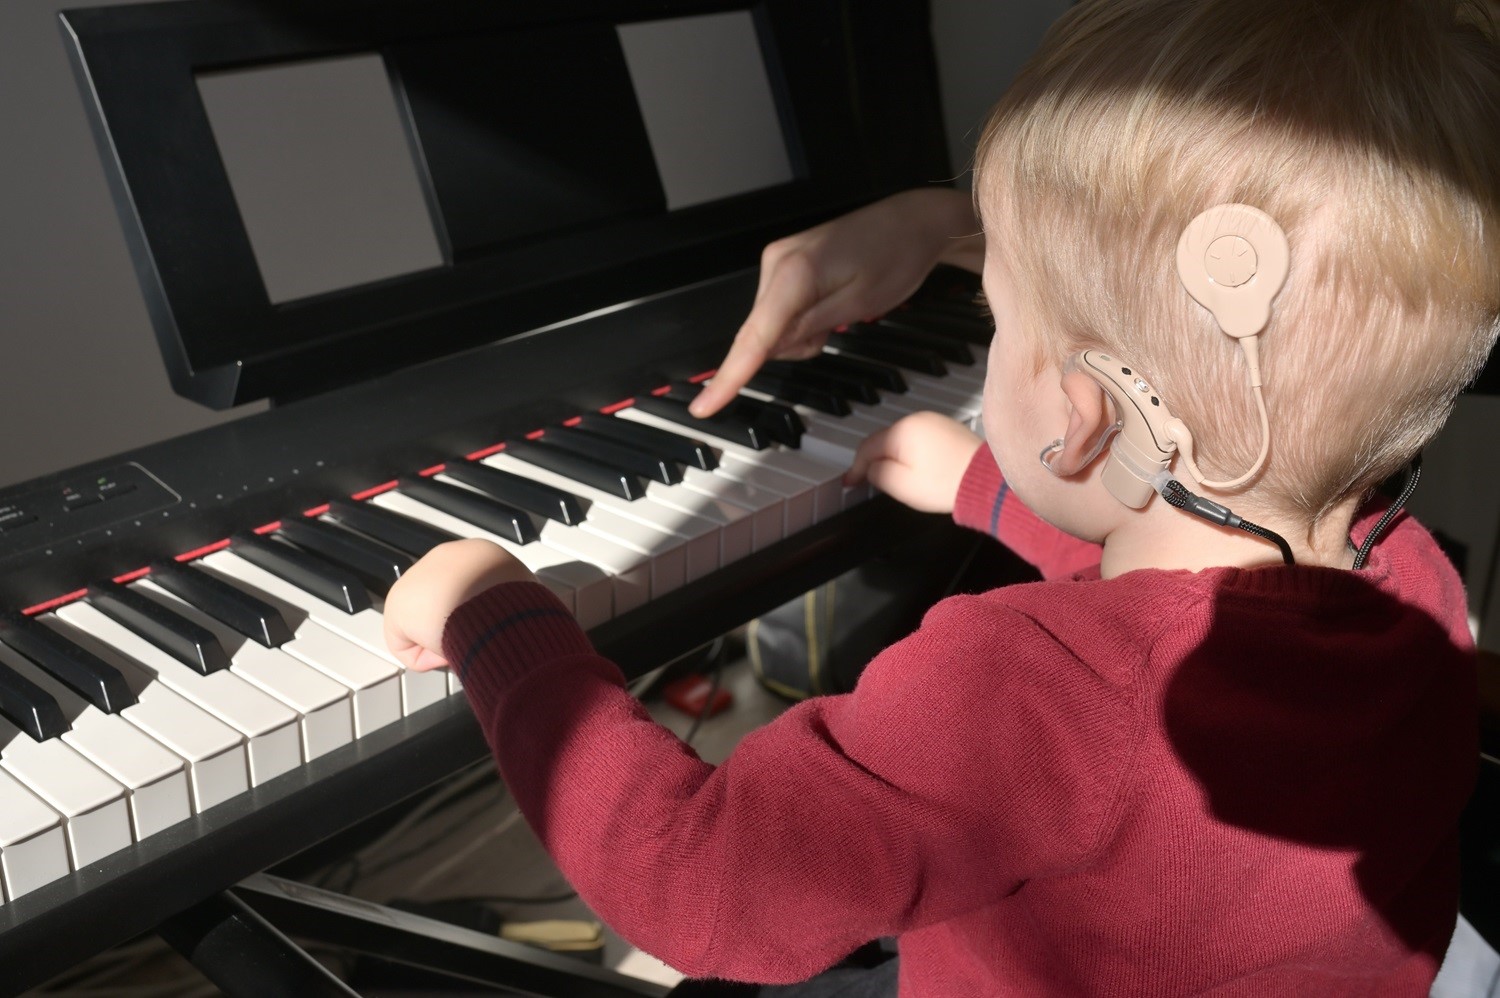 Ein Kind mit Cochlea-Implantat beim Klavier spielen.